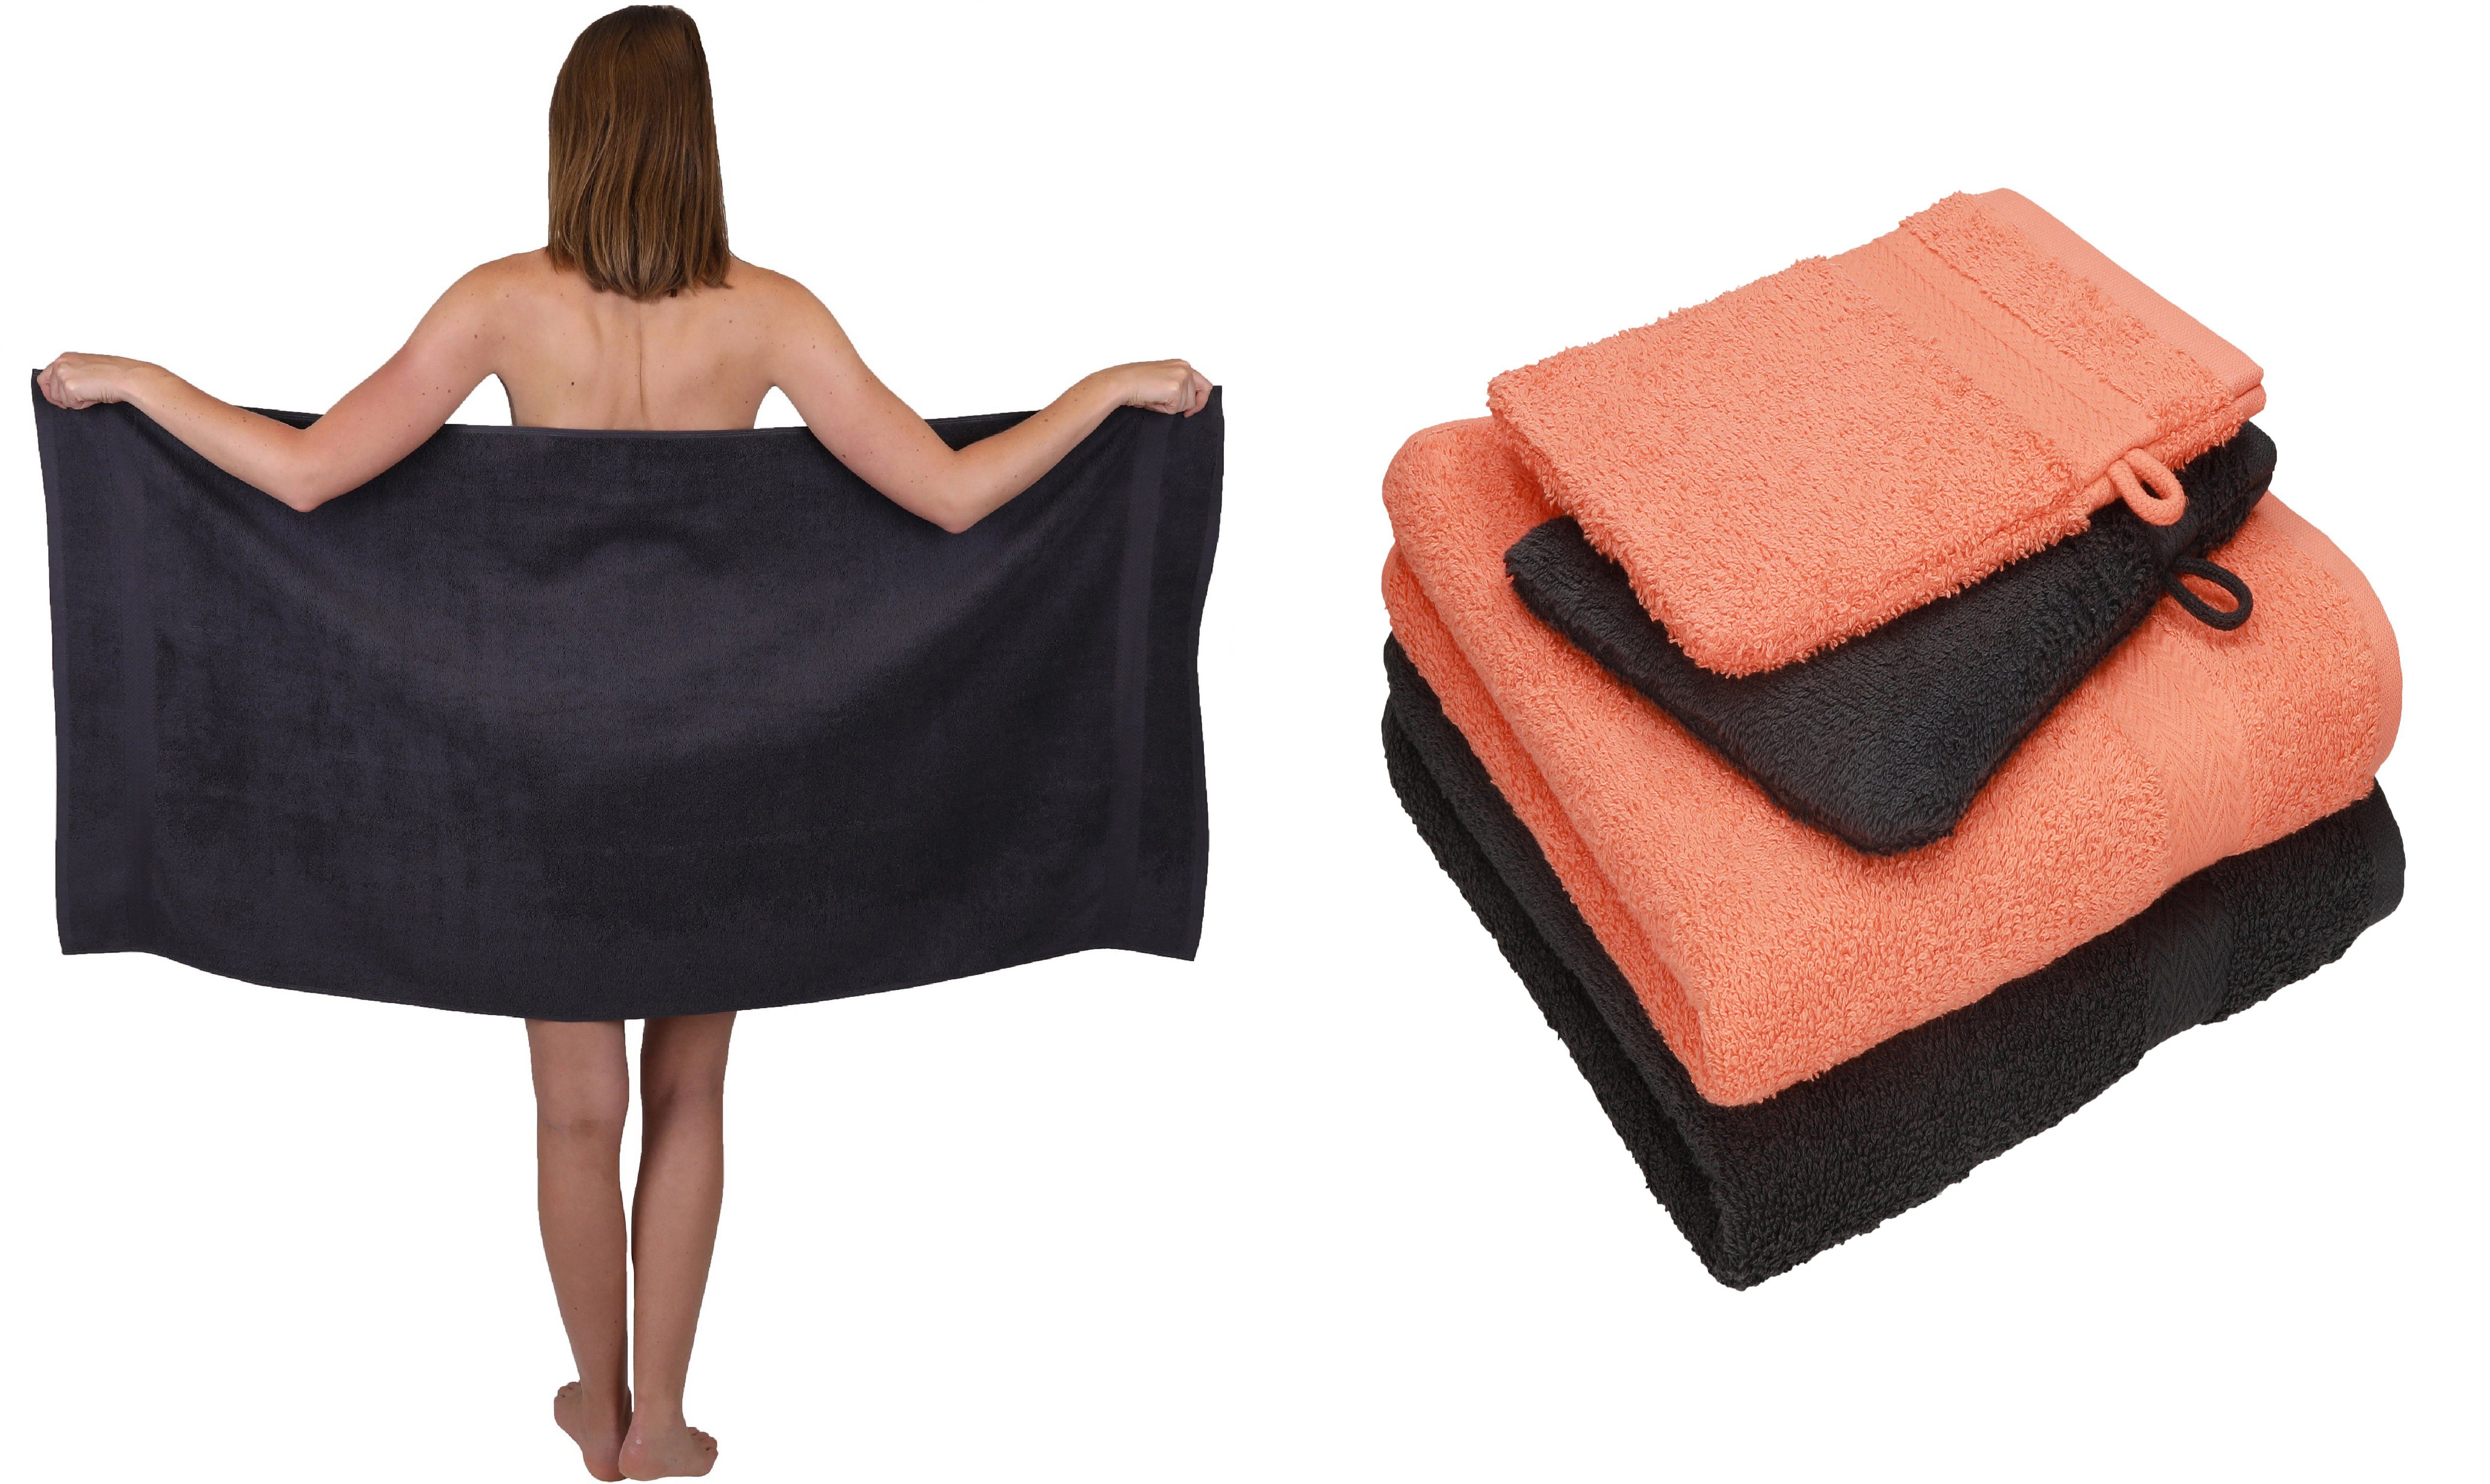 Betz Handtuch Set 5 TLG. Handtuch Set SINGLE PACK 100% Baumwolle 1 Duschtuch 2 Handtücher 2 Waschhandschuhe, 100% Baumwolle graphit grau und orange